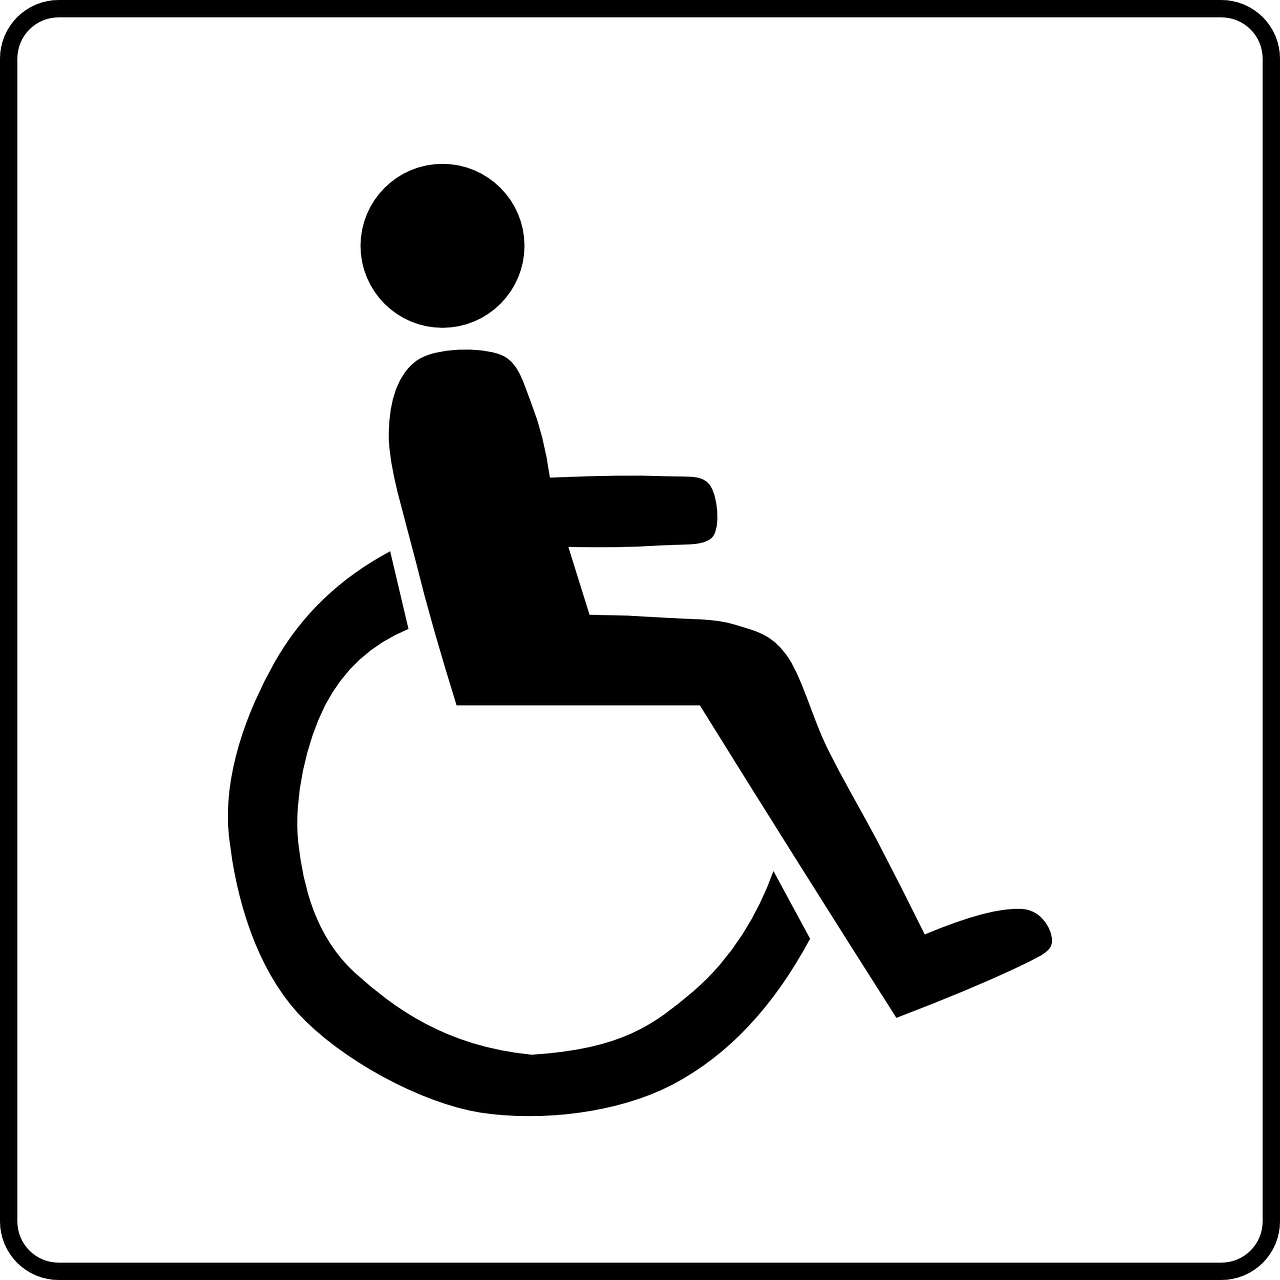 Zorggroep Samen instelling gehandicaptenzorg verstandelijk gehandicapten ervaringen